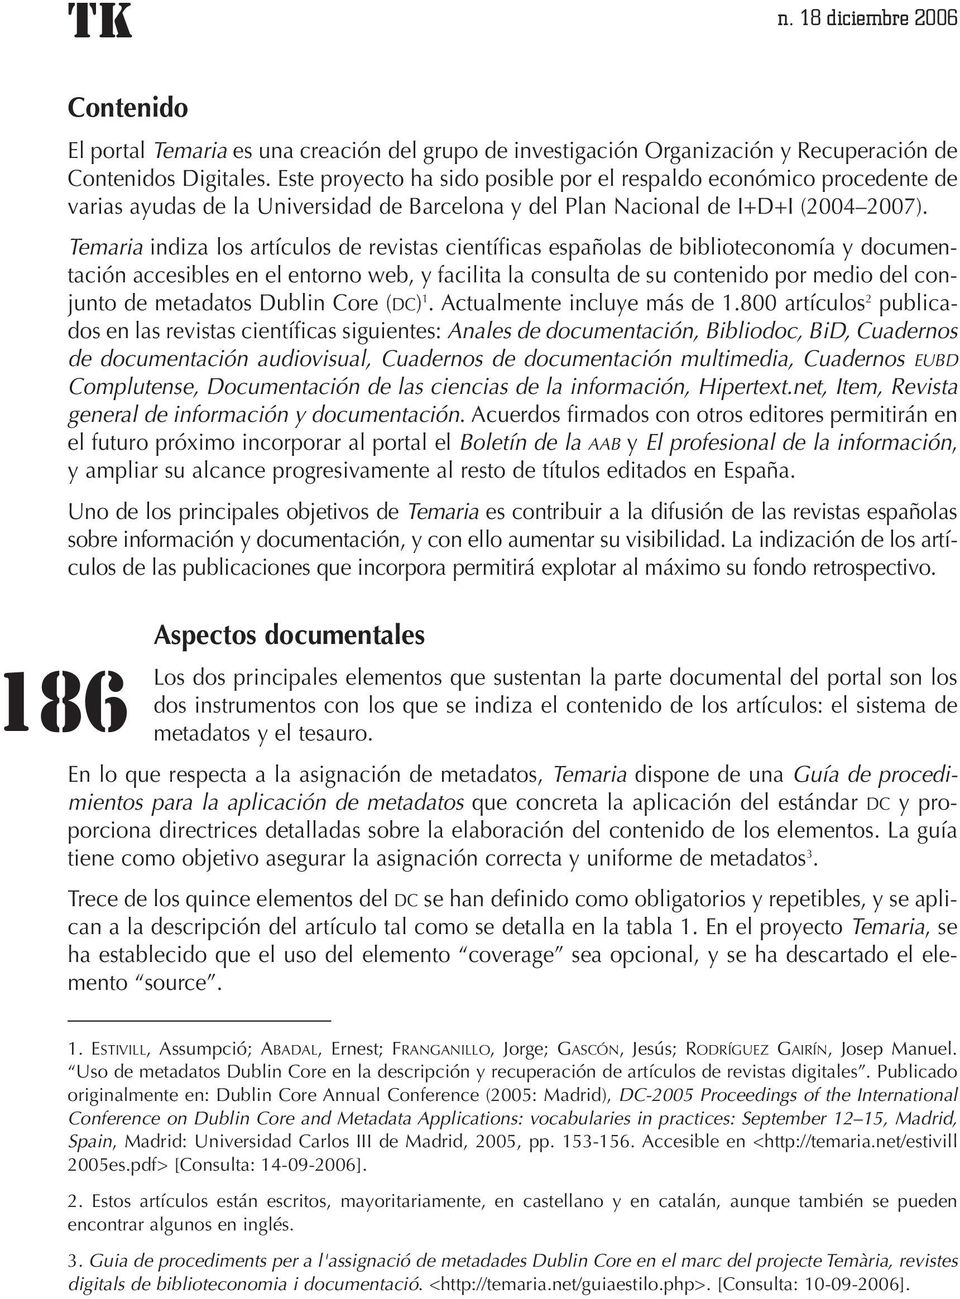 Temaria indiza los artículos de revistas científicas españolas de biblioteconomía y documentación accesibles en el entorno web, y facilita la consulta de su contenido por medio del conjunto de